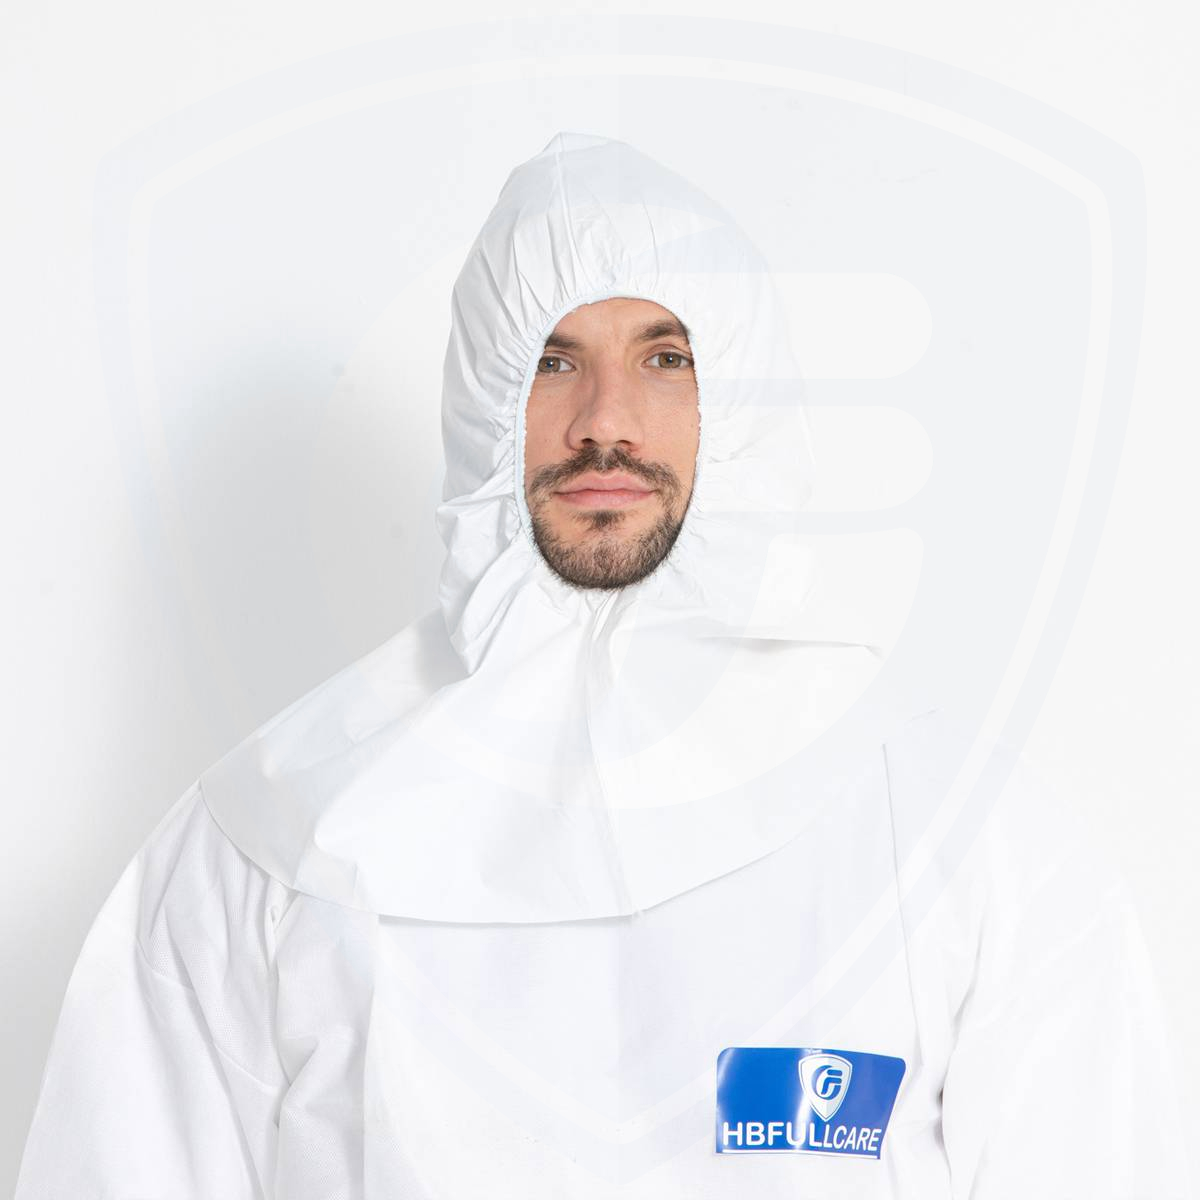 Günstiger Preis Einweg-Astronautenkappe ohne Maske für die persönliche Sicherheit